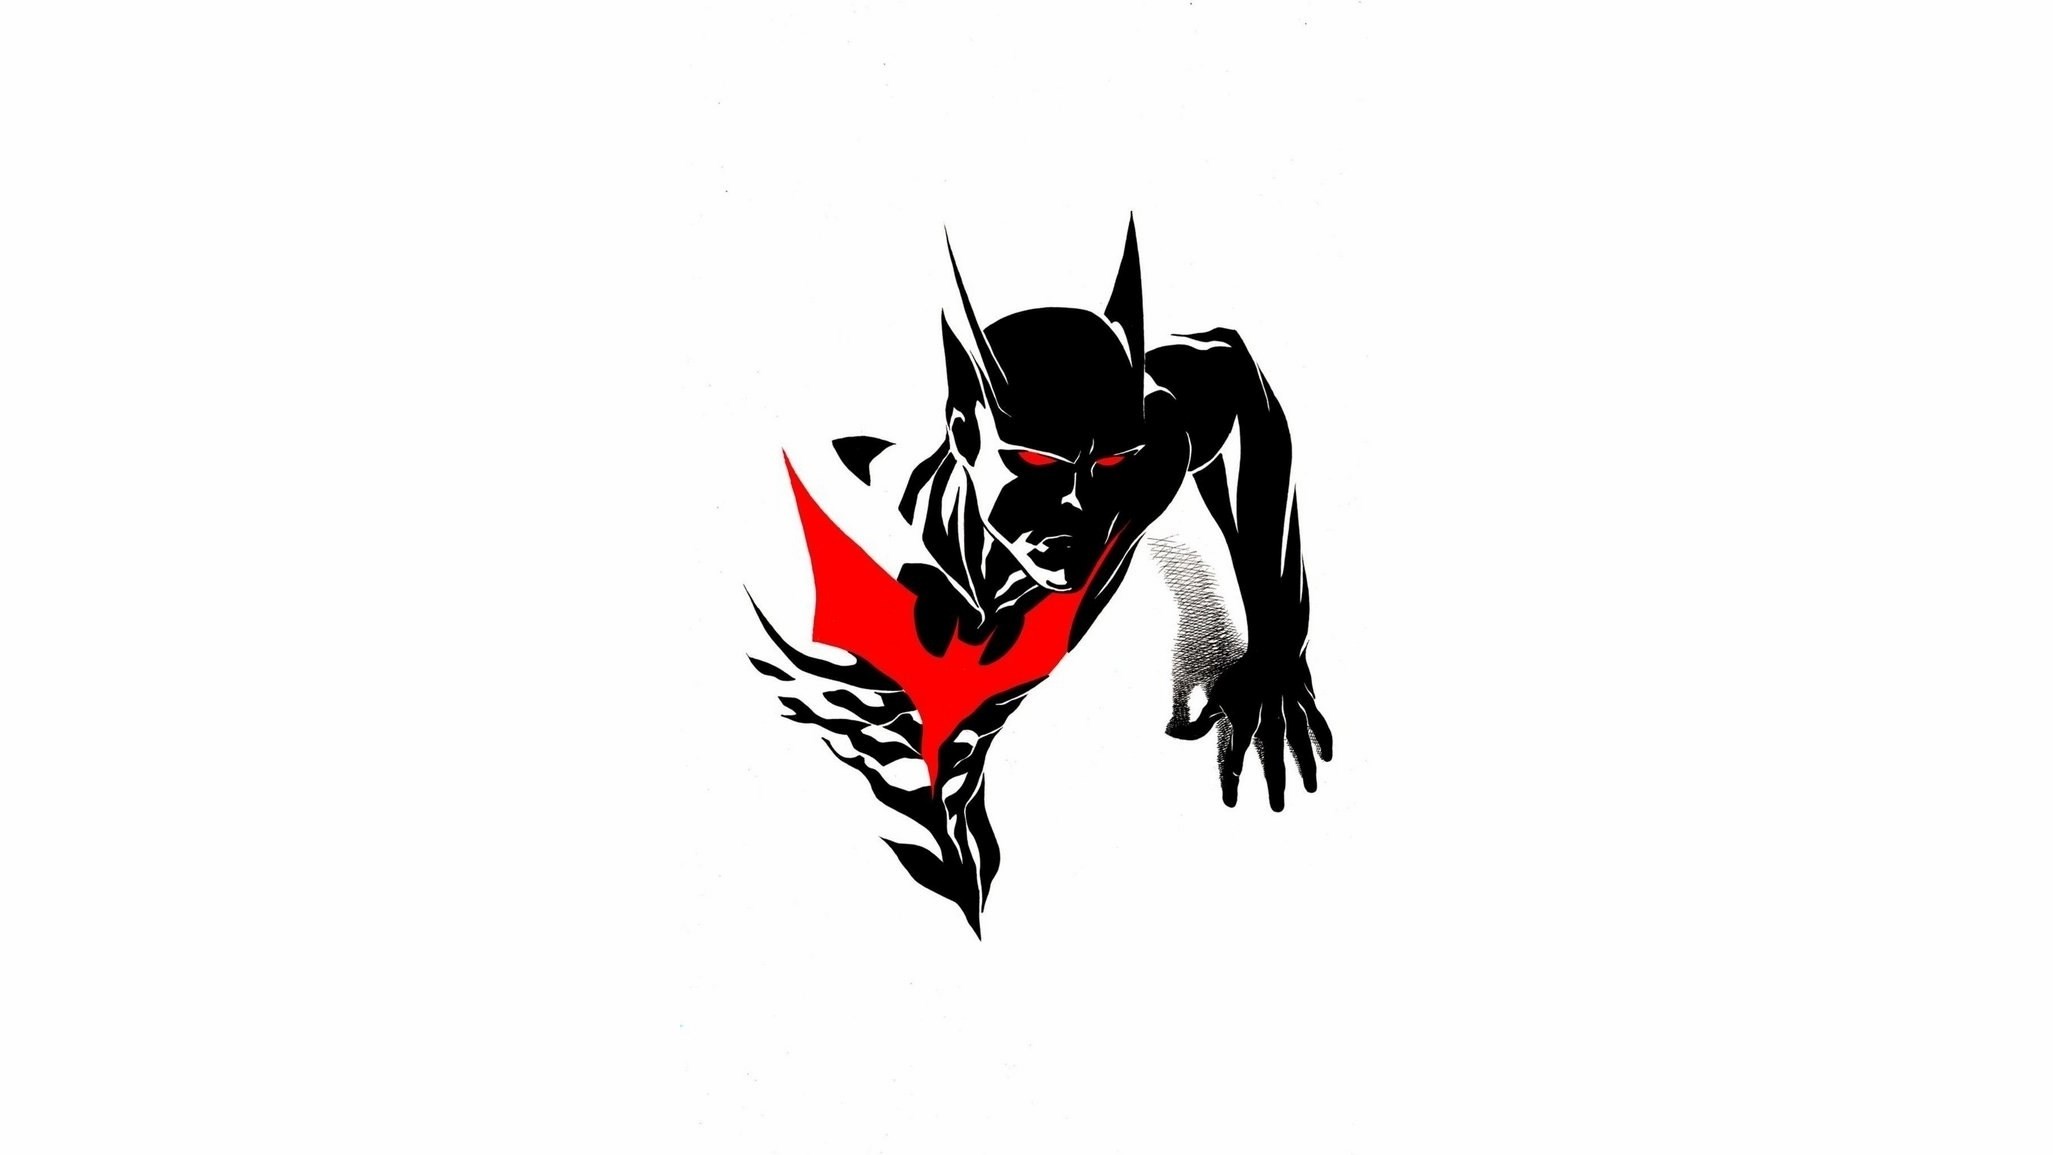 2053x1155  Wallpaper for Desktop: batman beyond